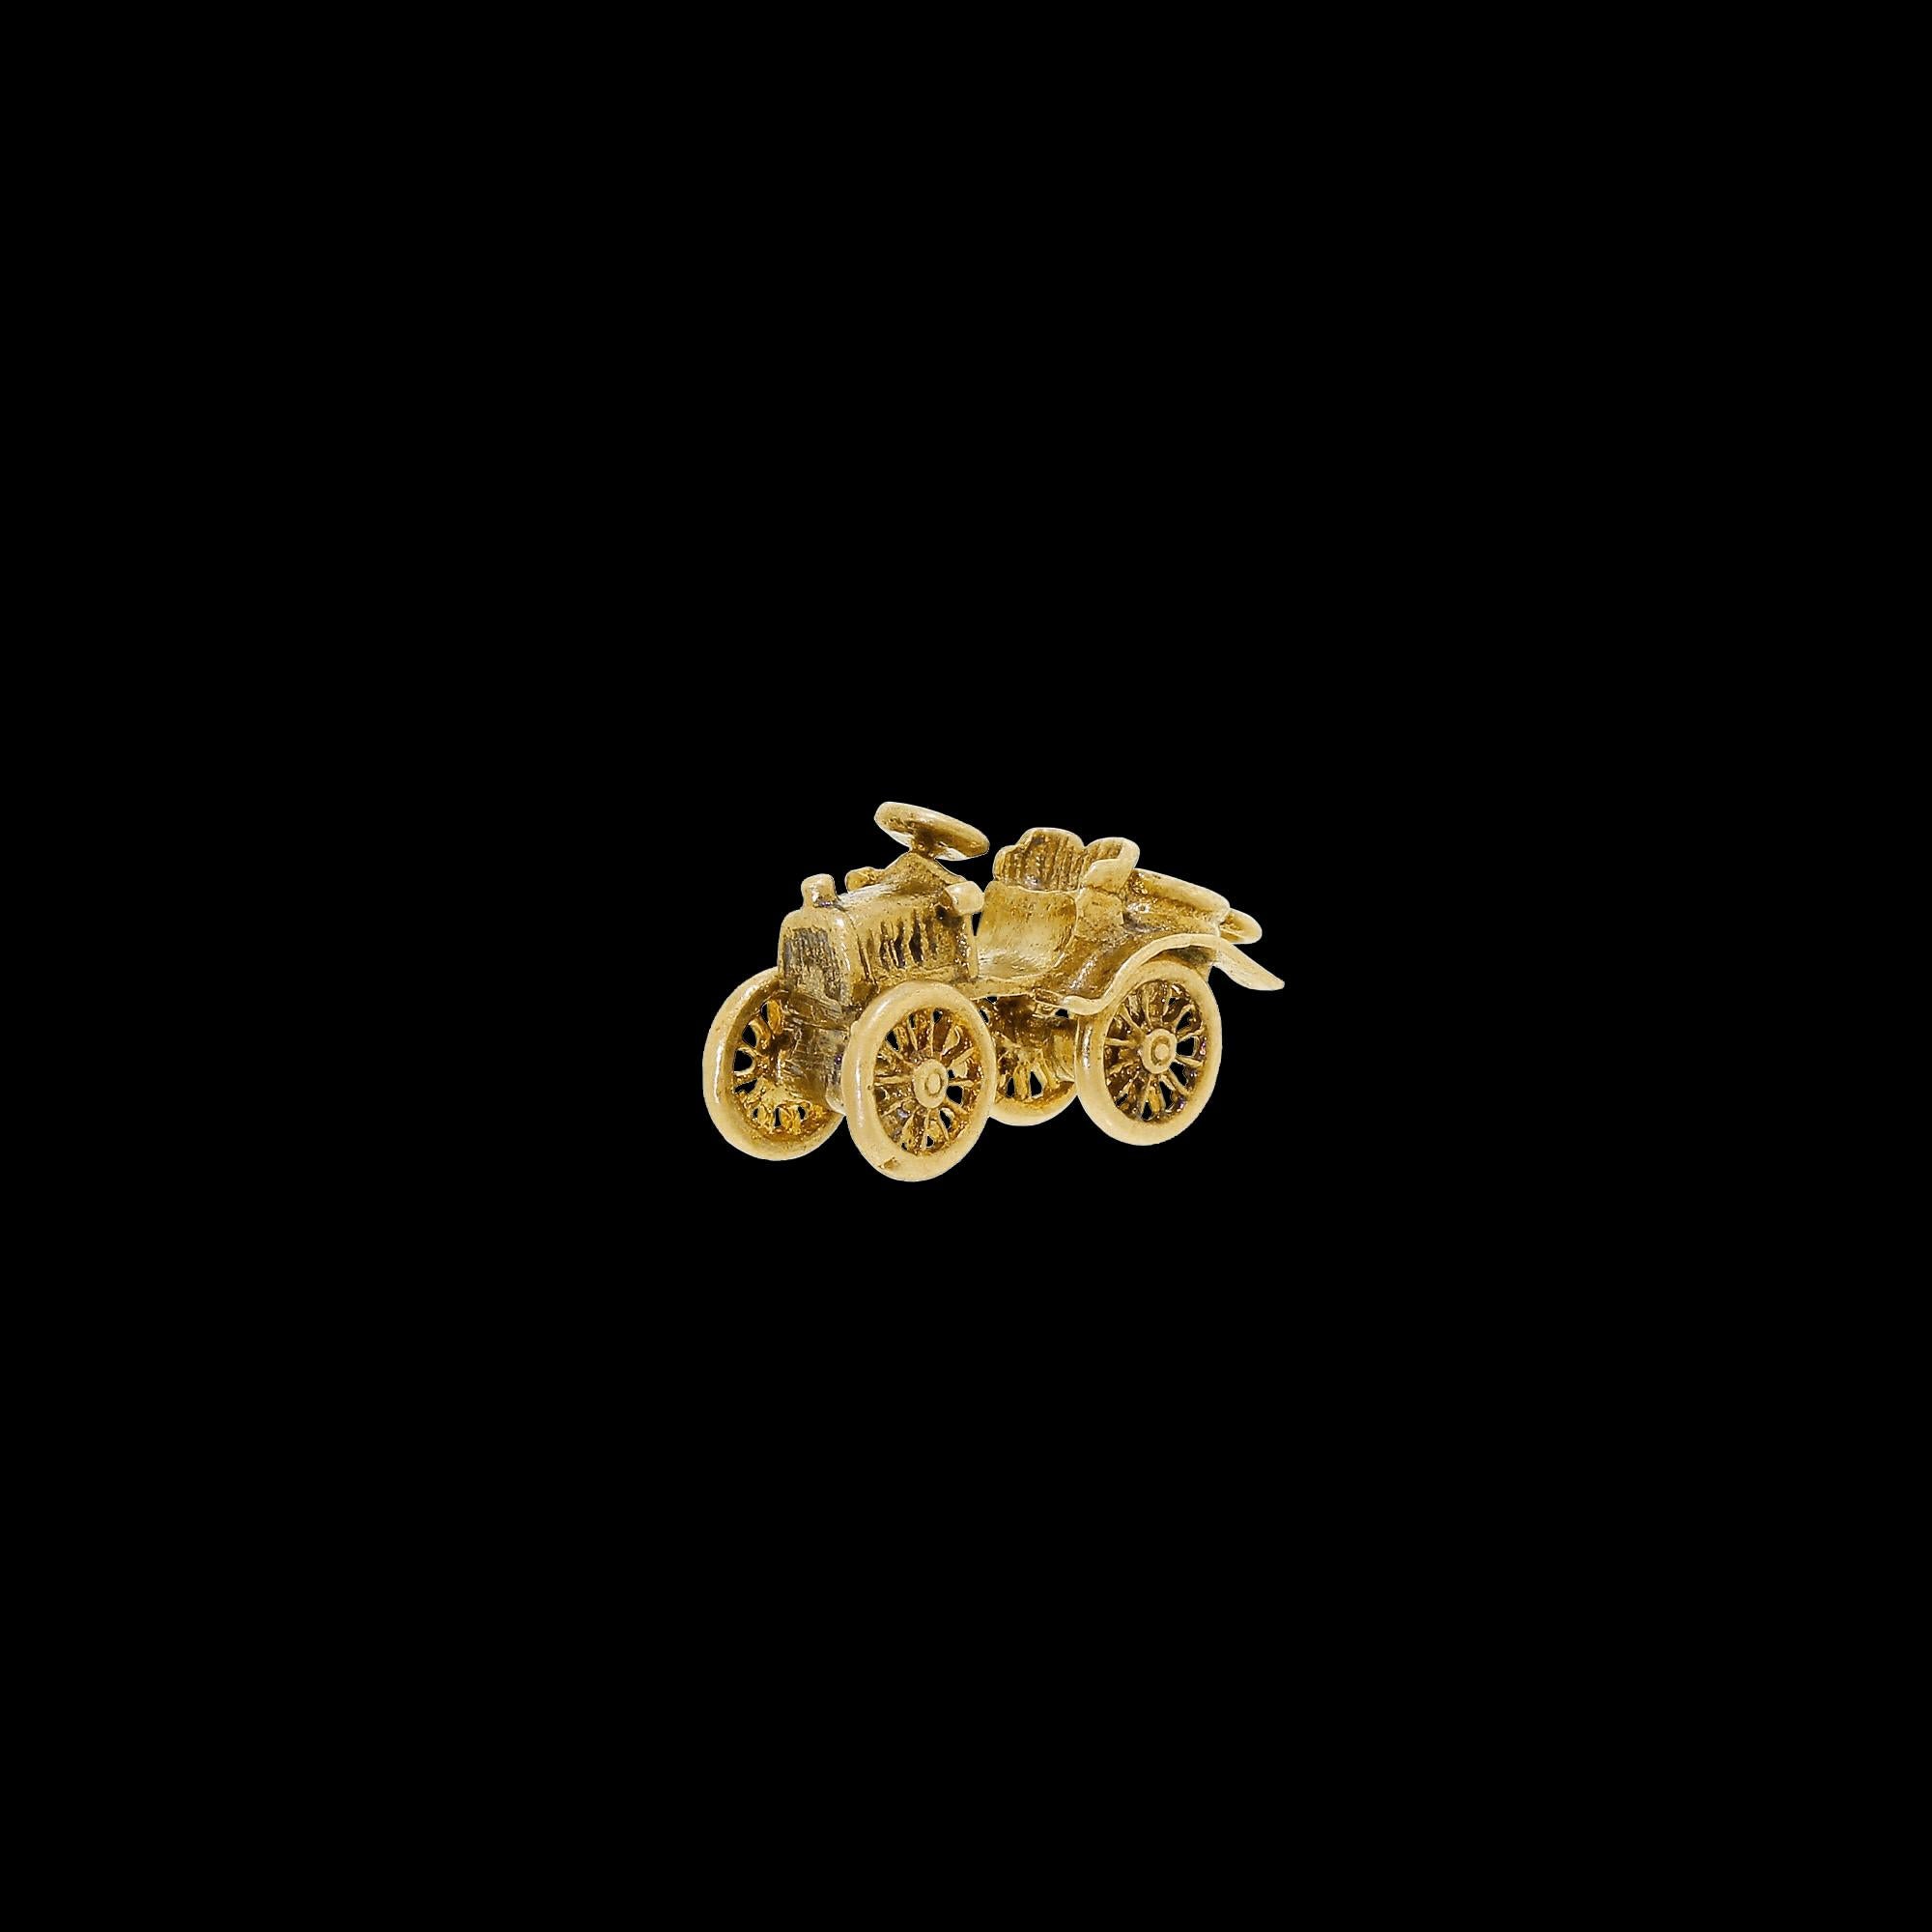 Details und Zustand: Diese fabelhafte 9K massivem Gelbgold Charme zeigt ein antikes Auto mit sich drehenden Vorderrädern und exquisite Details. Die Räder und das Lenkrad sind besonders gut verarbeitet, mit winzigen einzelnen Speichen, die bei